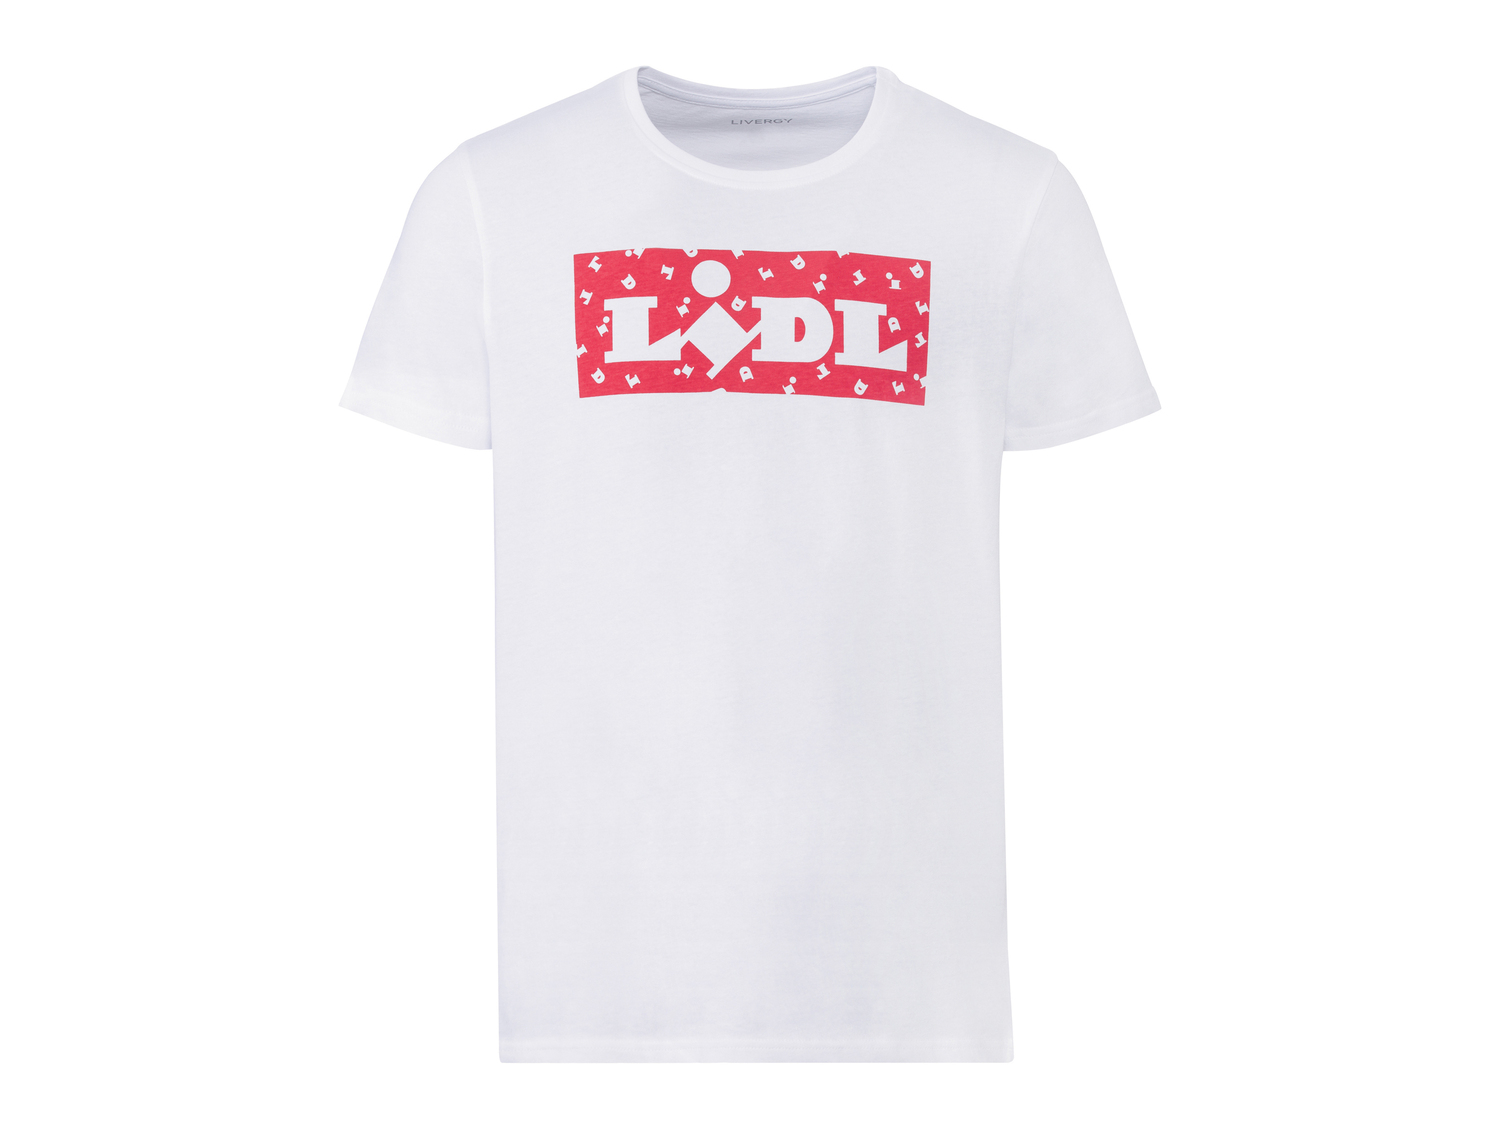 T-shirt da uomo Lidl Livergy, prezzo 3.99 € 
Misure: S-XL 
- Puro cotone
Prodotto ...